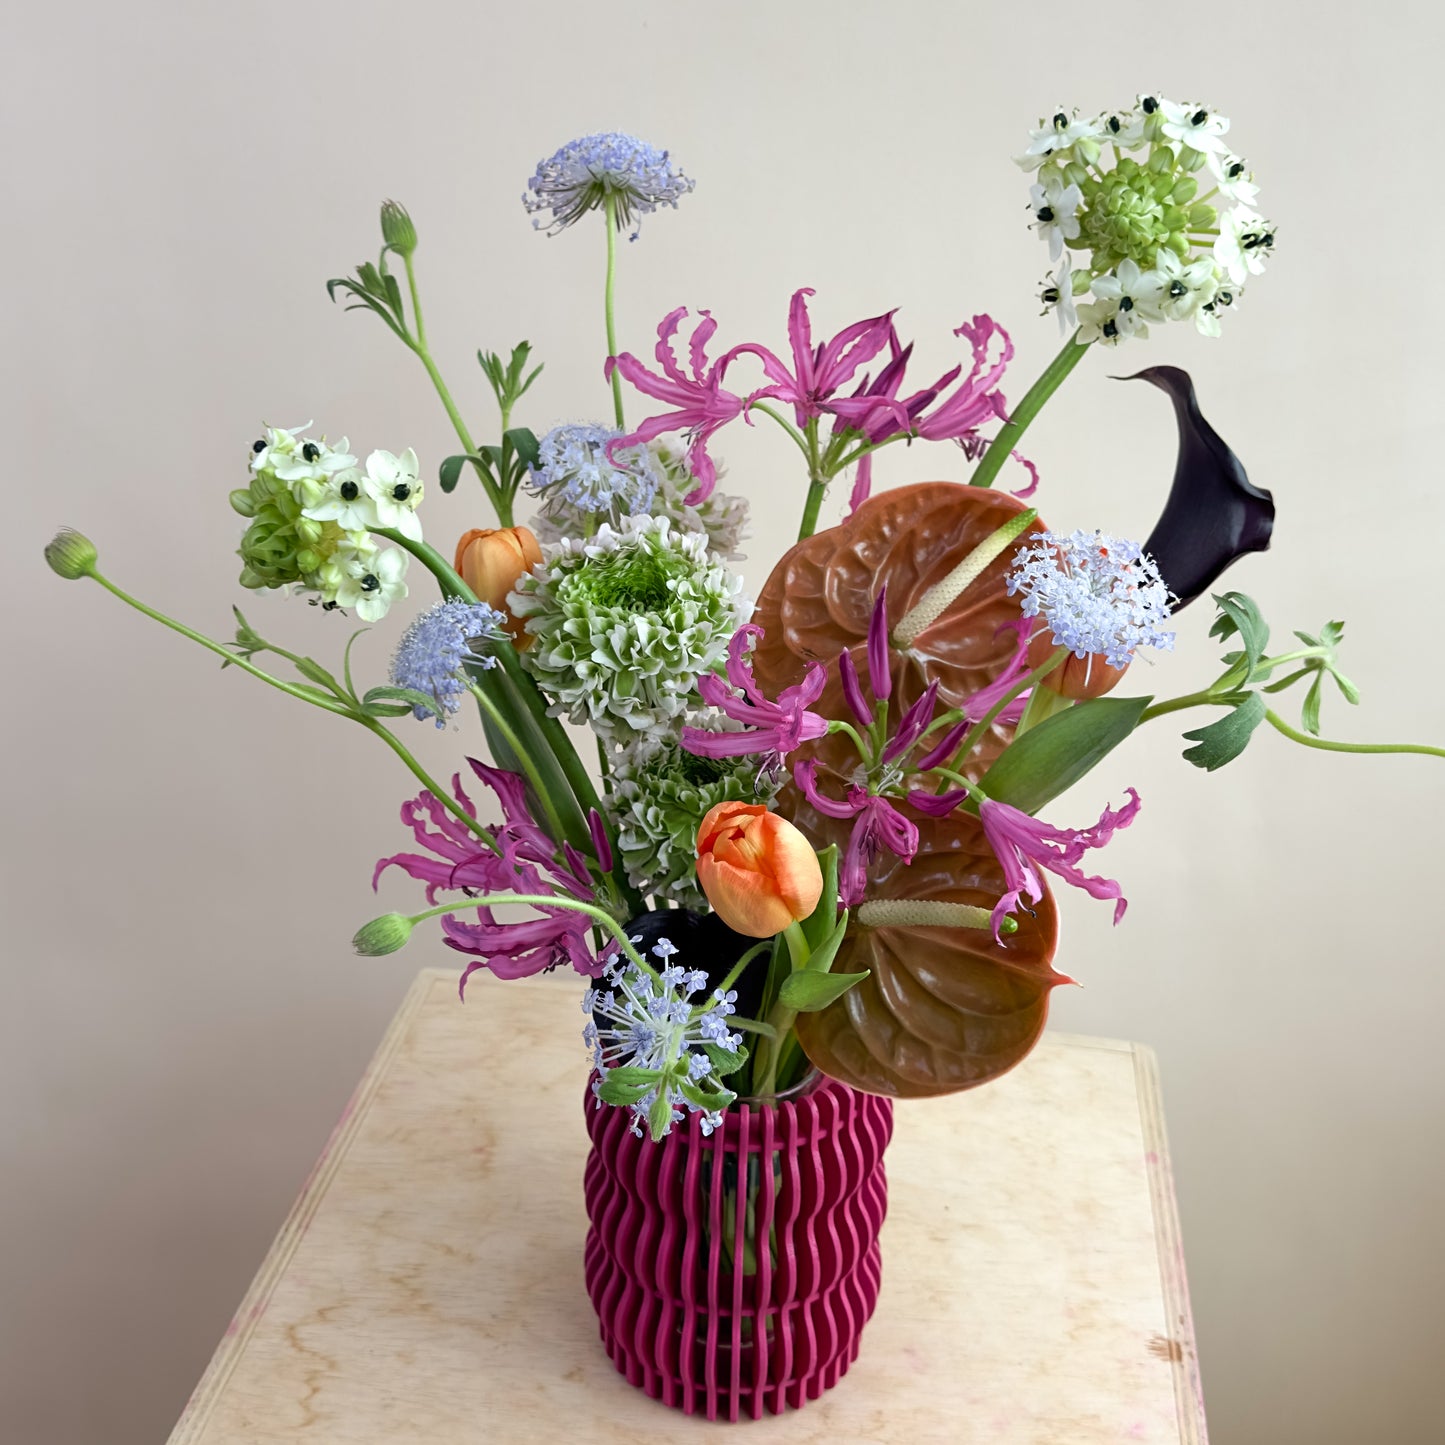 Valentine's Day Special - Vase Arrangement, Fuchsia